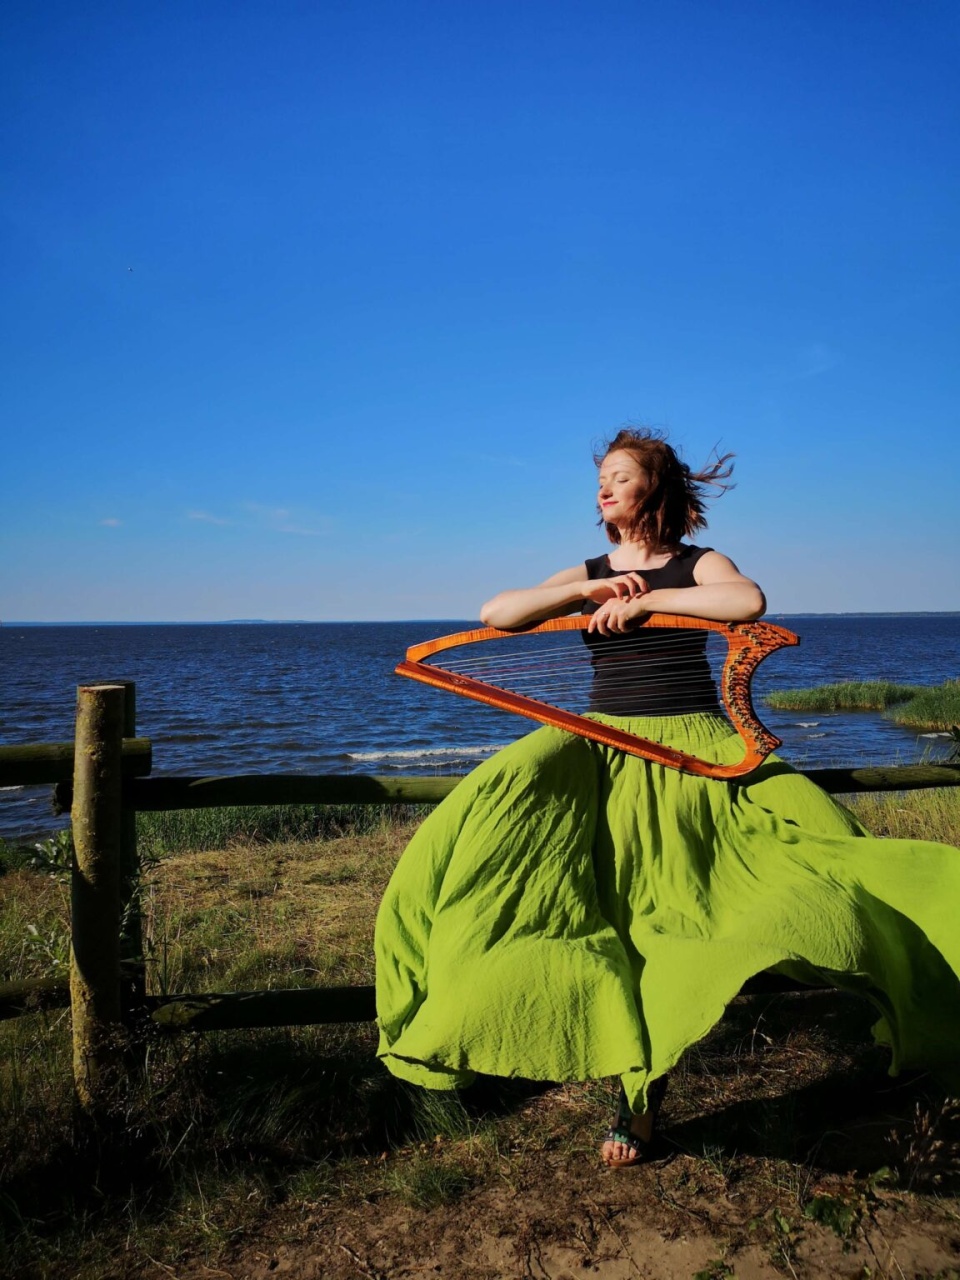 Harfistka, która uważa, że na harfie może grać właściwie każdy. Źródło: emiliaraiter.pl